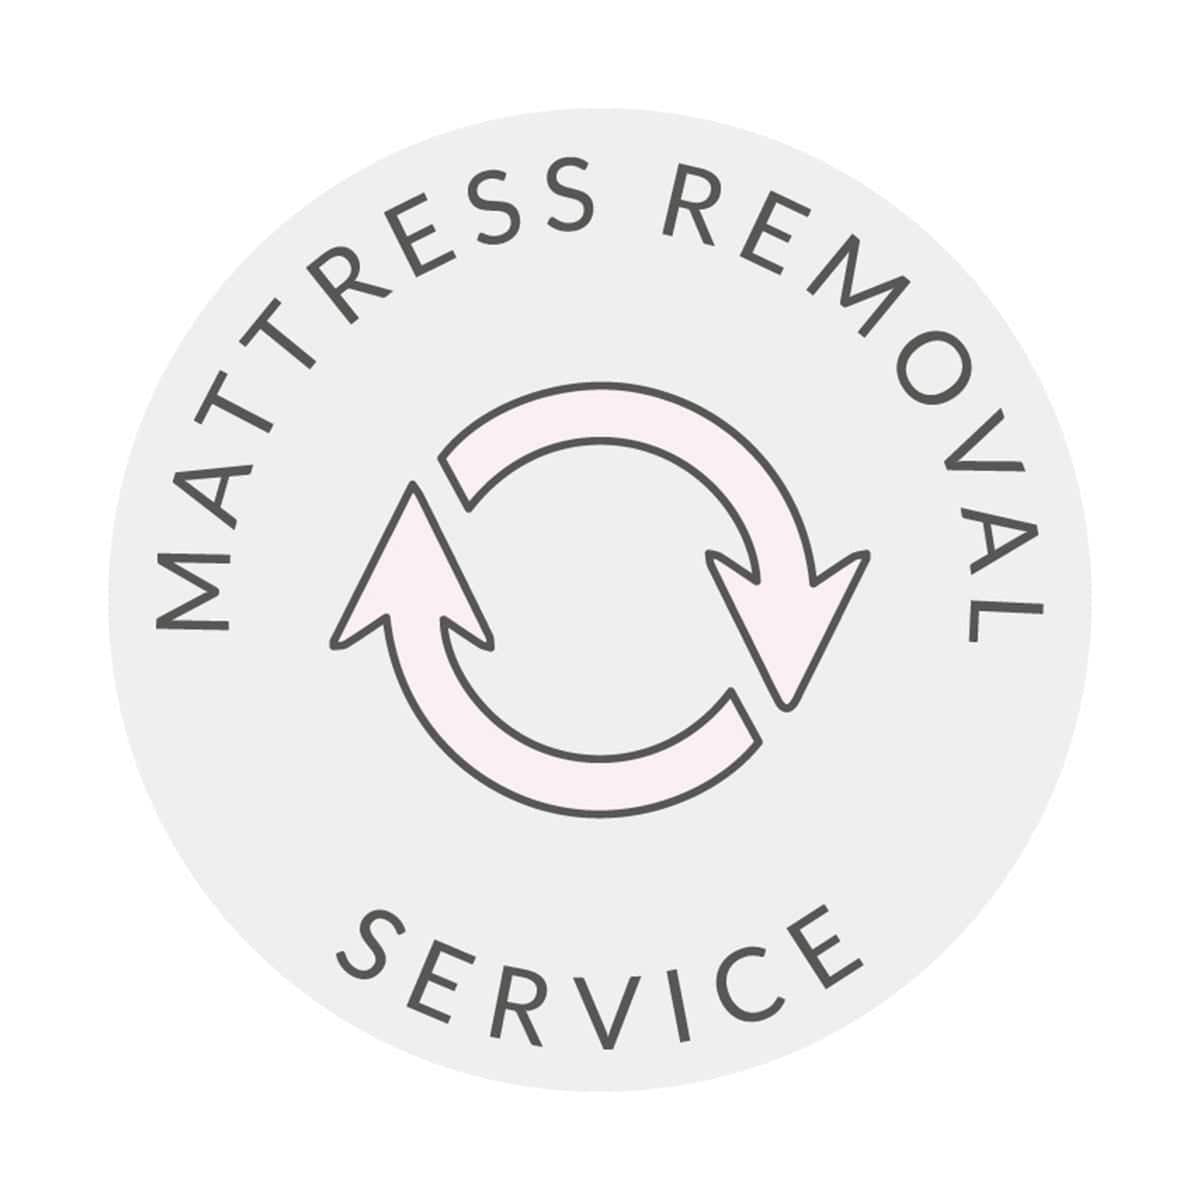 Mattress Recycling Service - DUSK